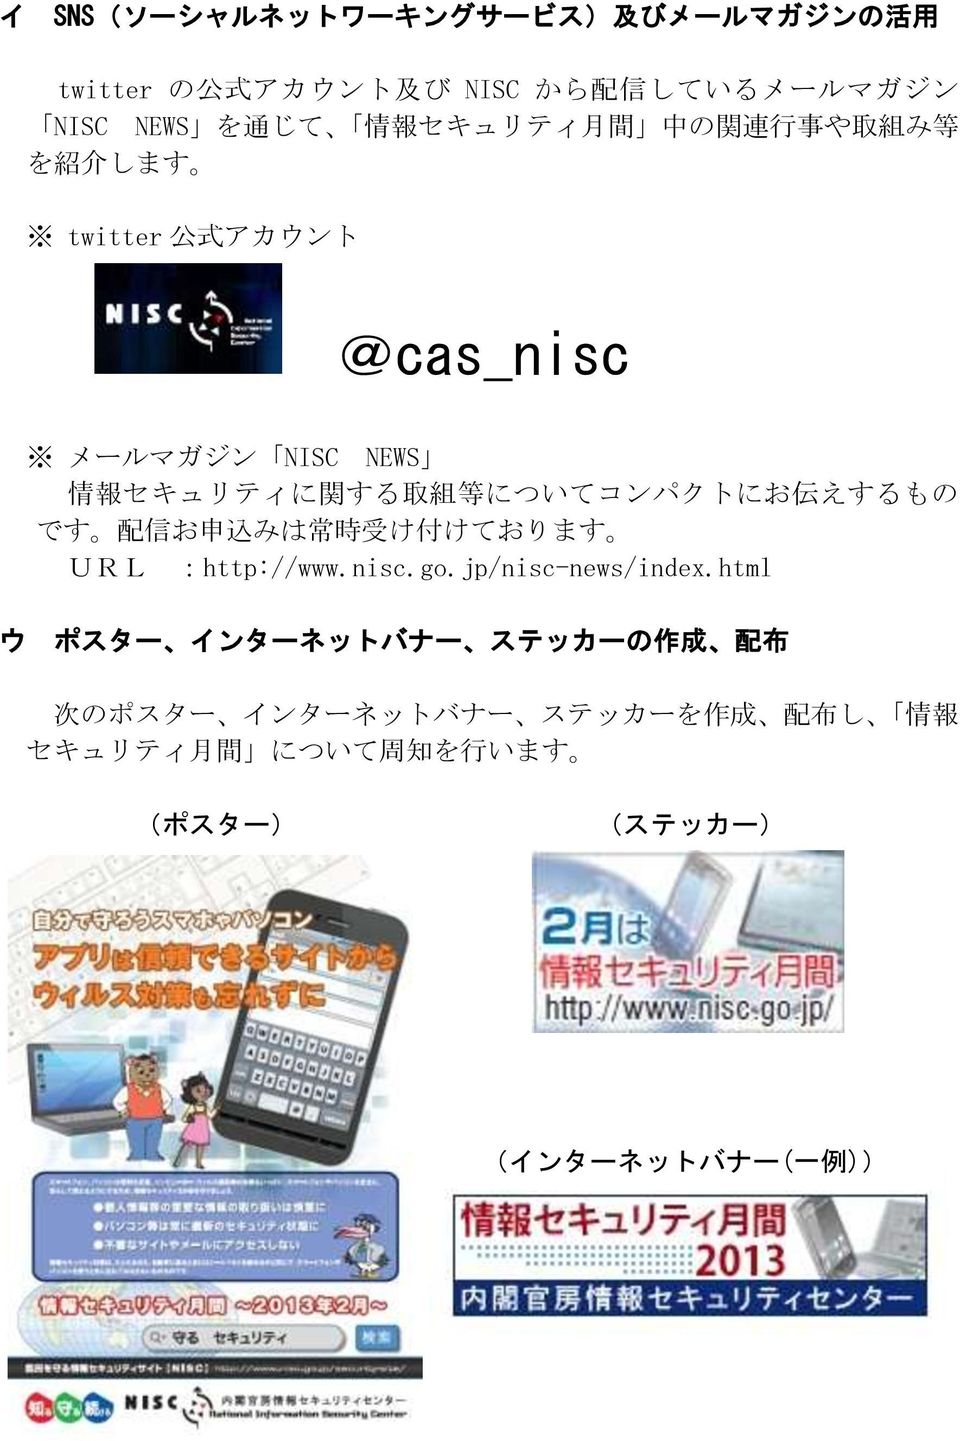 についてコンパクトにお 伝 えするもの です 配 信 お 申 込 みは 常 時 受 け 付 けております URL :http://www.nisc.go.jp/nisc-news/index.